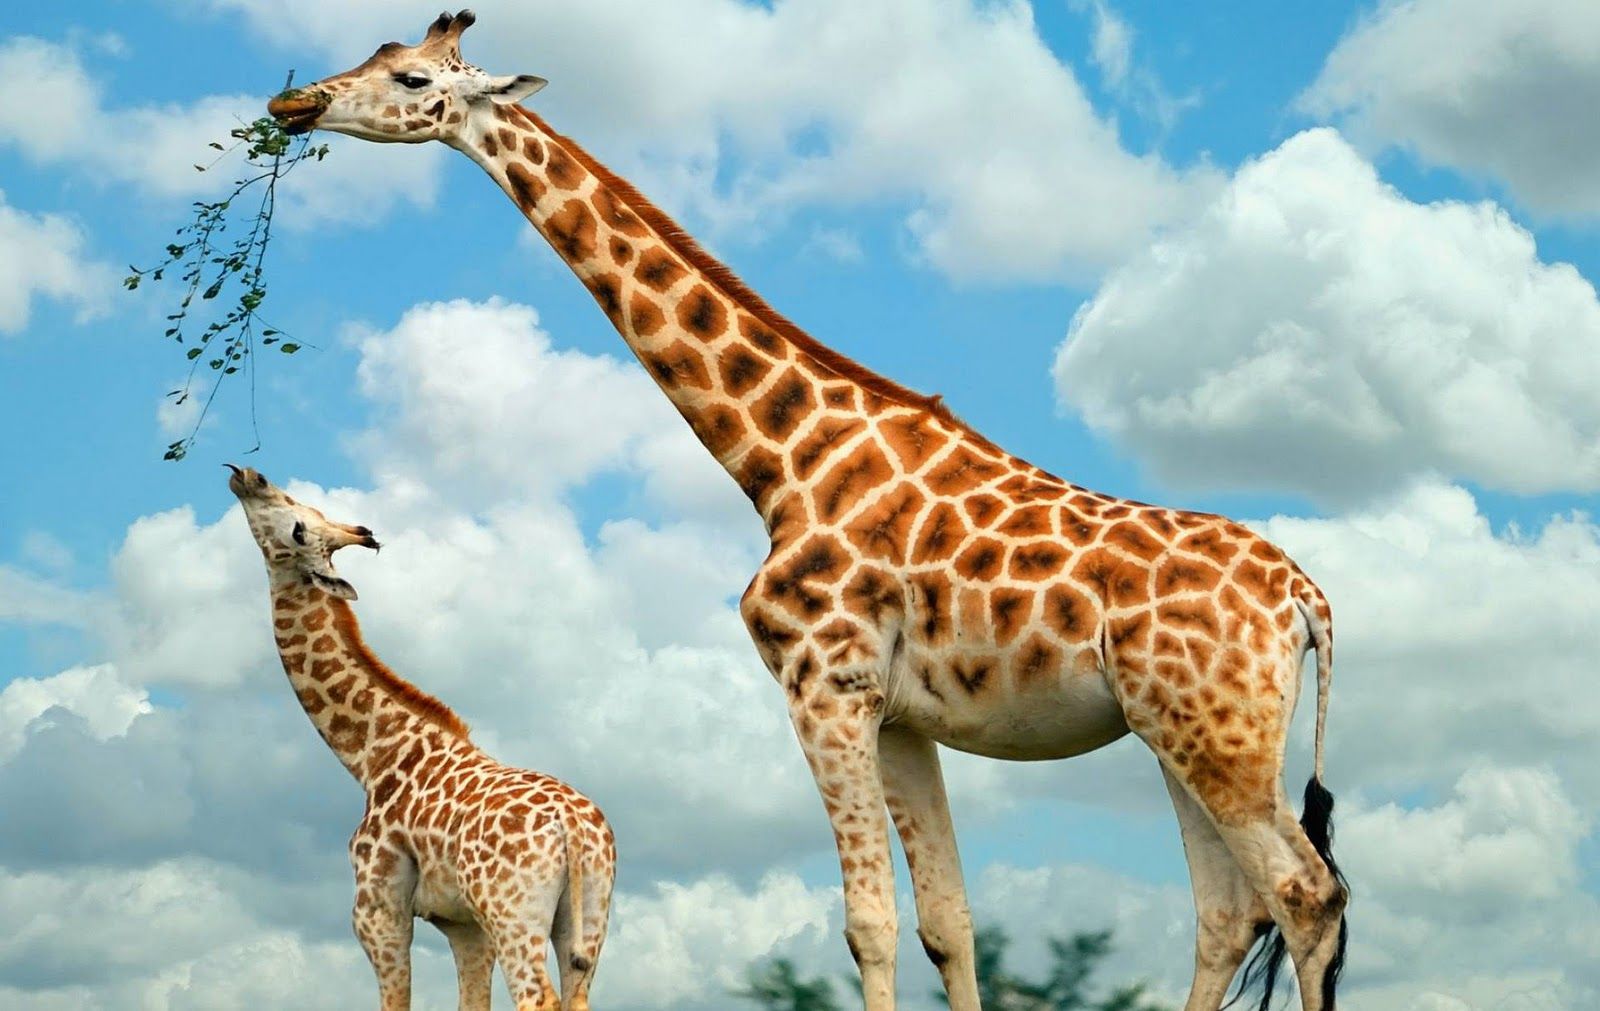 Giraffe Wallpaper For Desktop In HD